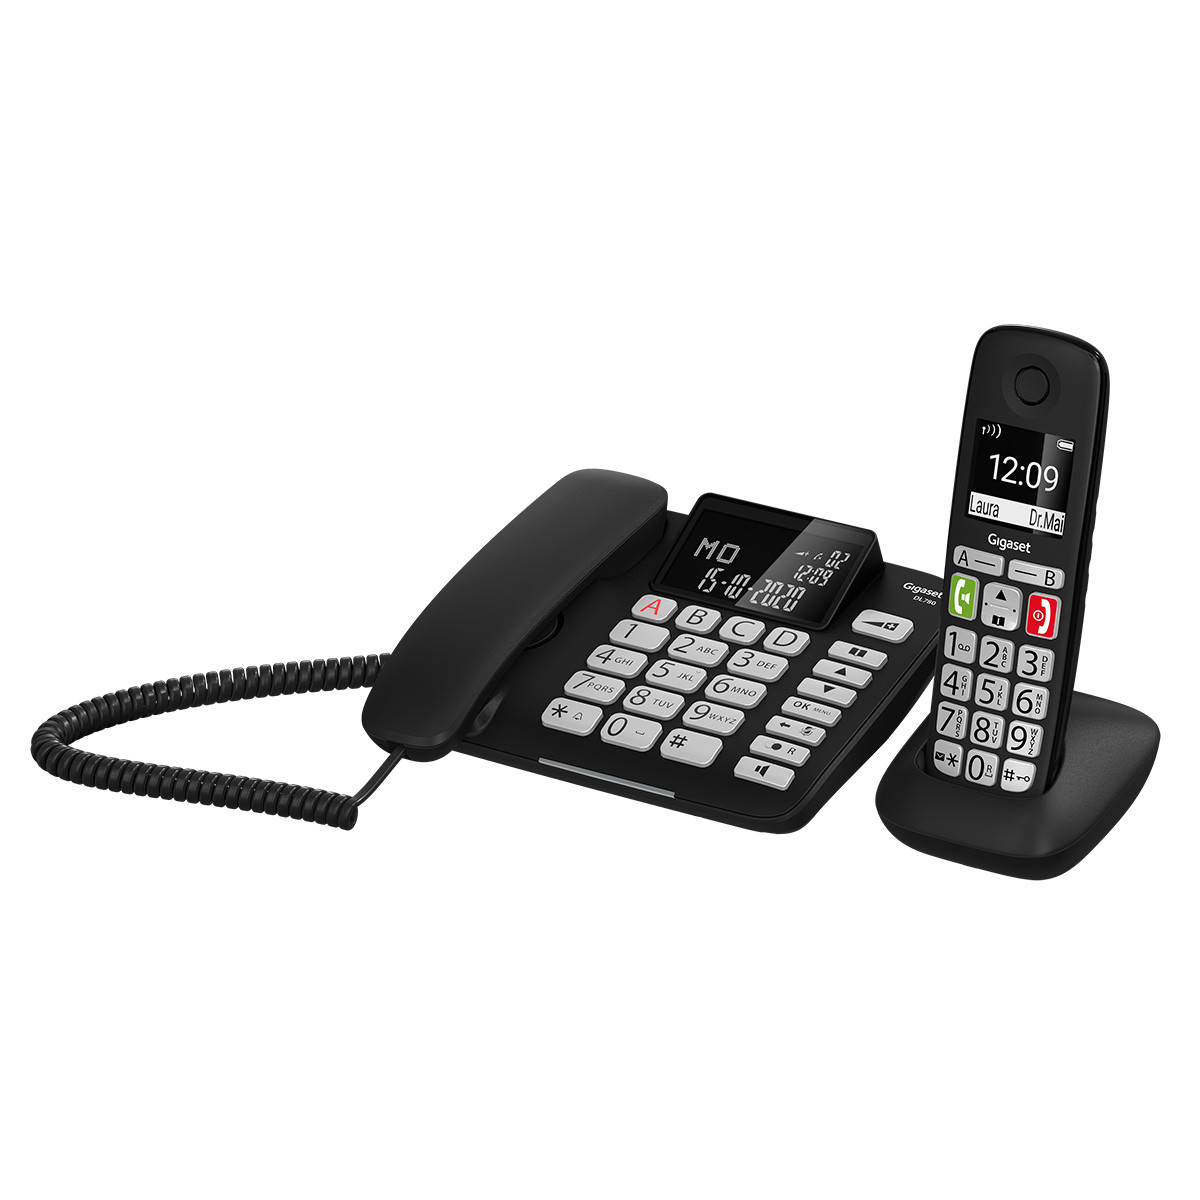 Schnurgebundenes & schnurloses Telefon Gigaset DL780 Plus Schnurloses DECT-Telefon für Senioren zum Anschluss an vorhandene DECT-Basis schwarz & E290HX Schwarz Mobilteil mit Ladeschale 